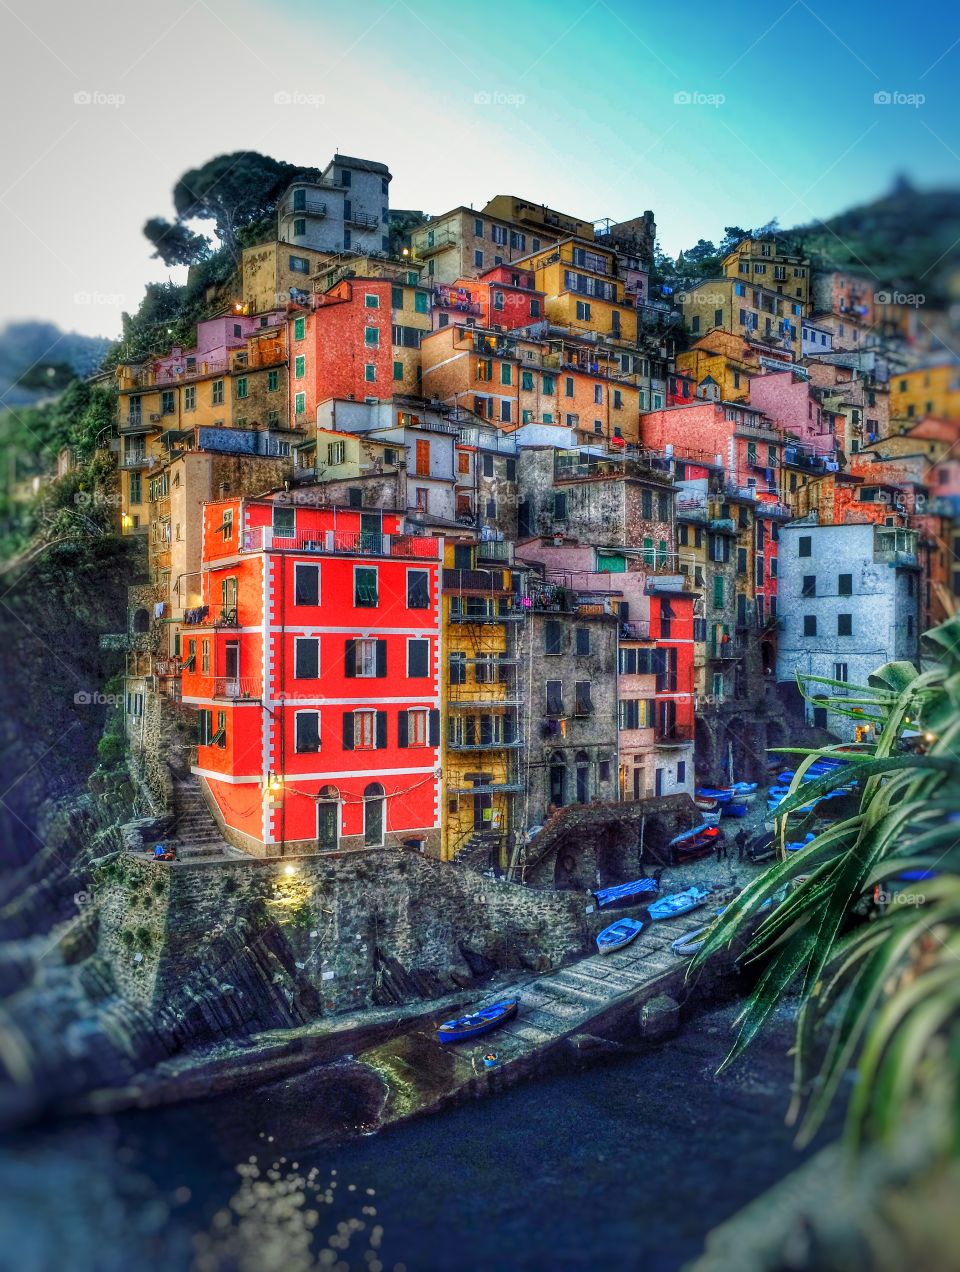 Riomaggiore, Cinque Terre of Italy. Riomaggiore, beautiful and colourful village of Cinque Terre, Italy.